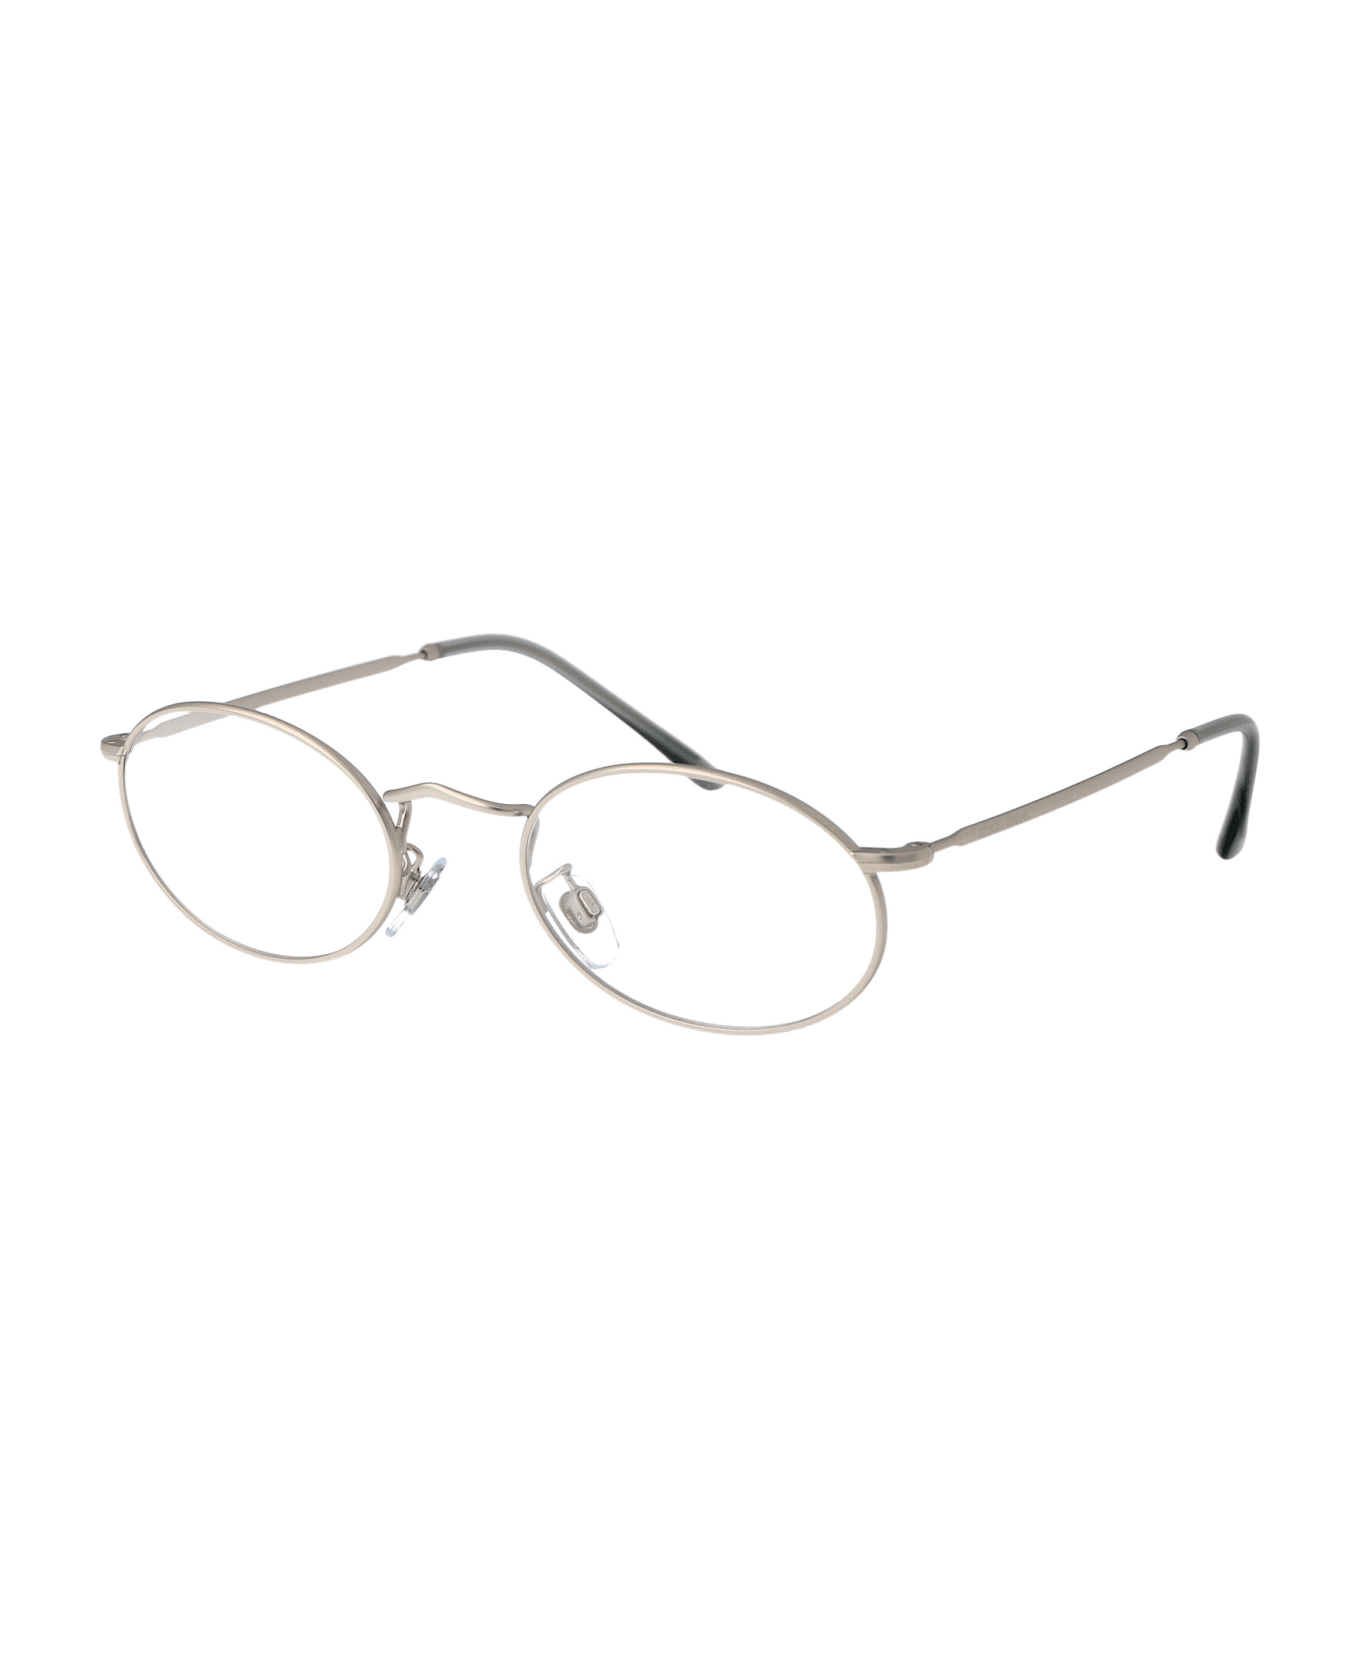 Giorgio Armani 0ar 131vm Glasses - 3045 Matte Silver アイウェア